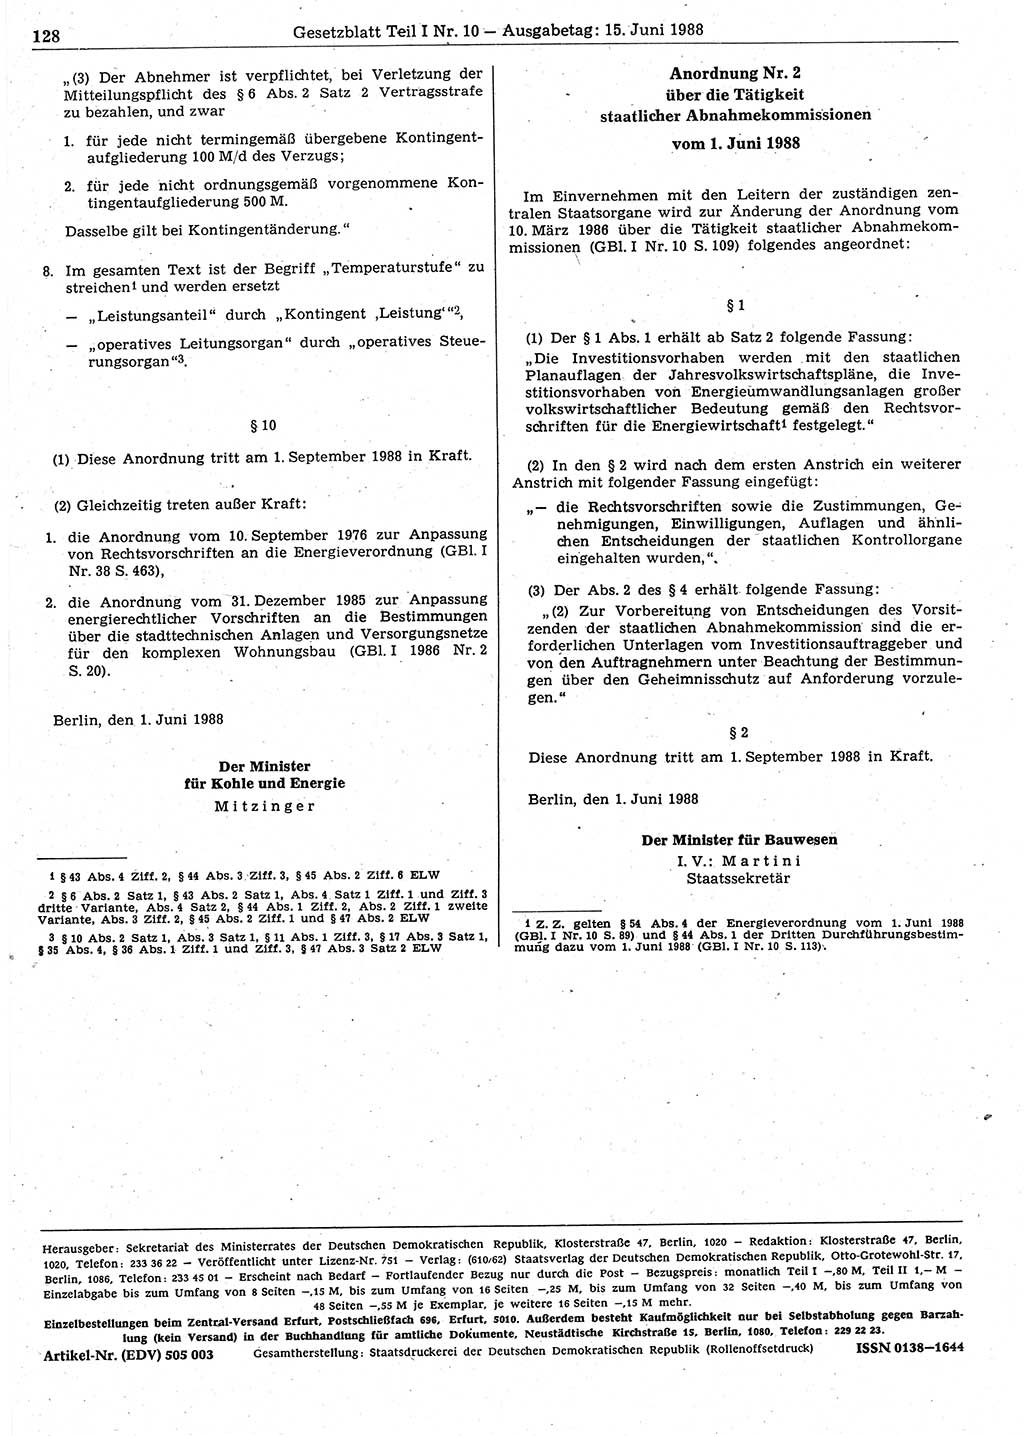 Gesetzblatt (GBl.) der Deutschen Demokratischen Republik (DDR) Teil Ⅰ 1988, Seite 128 (GBl. DDR Ⅰ 1988, S. 128)